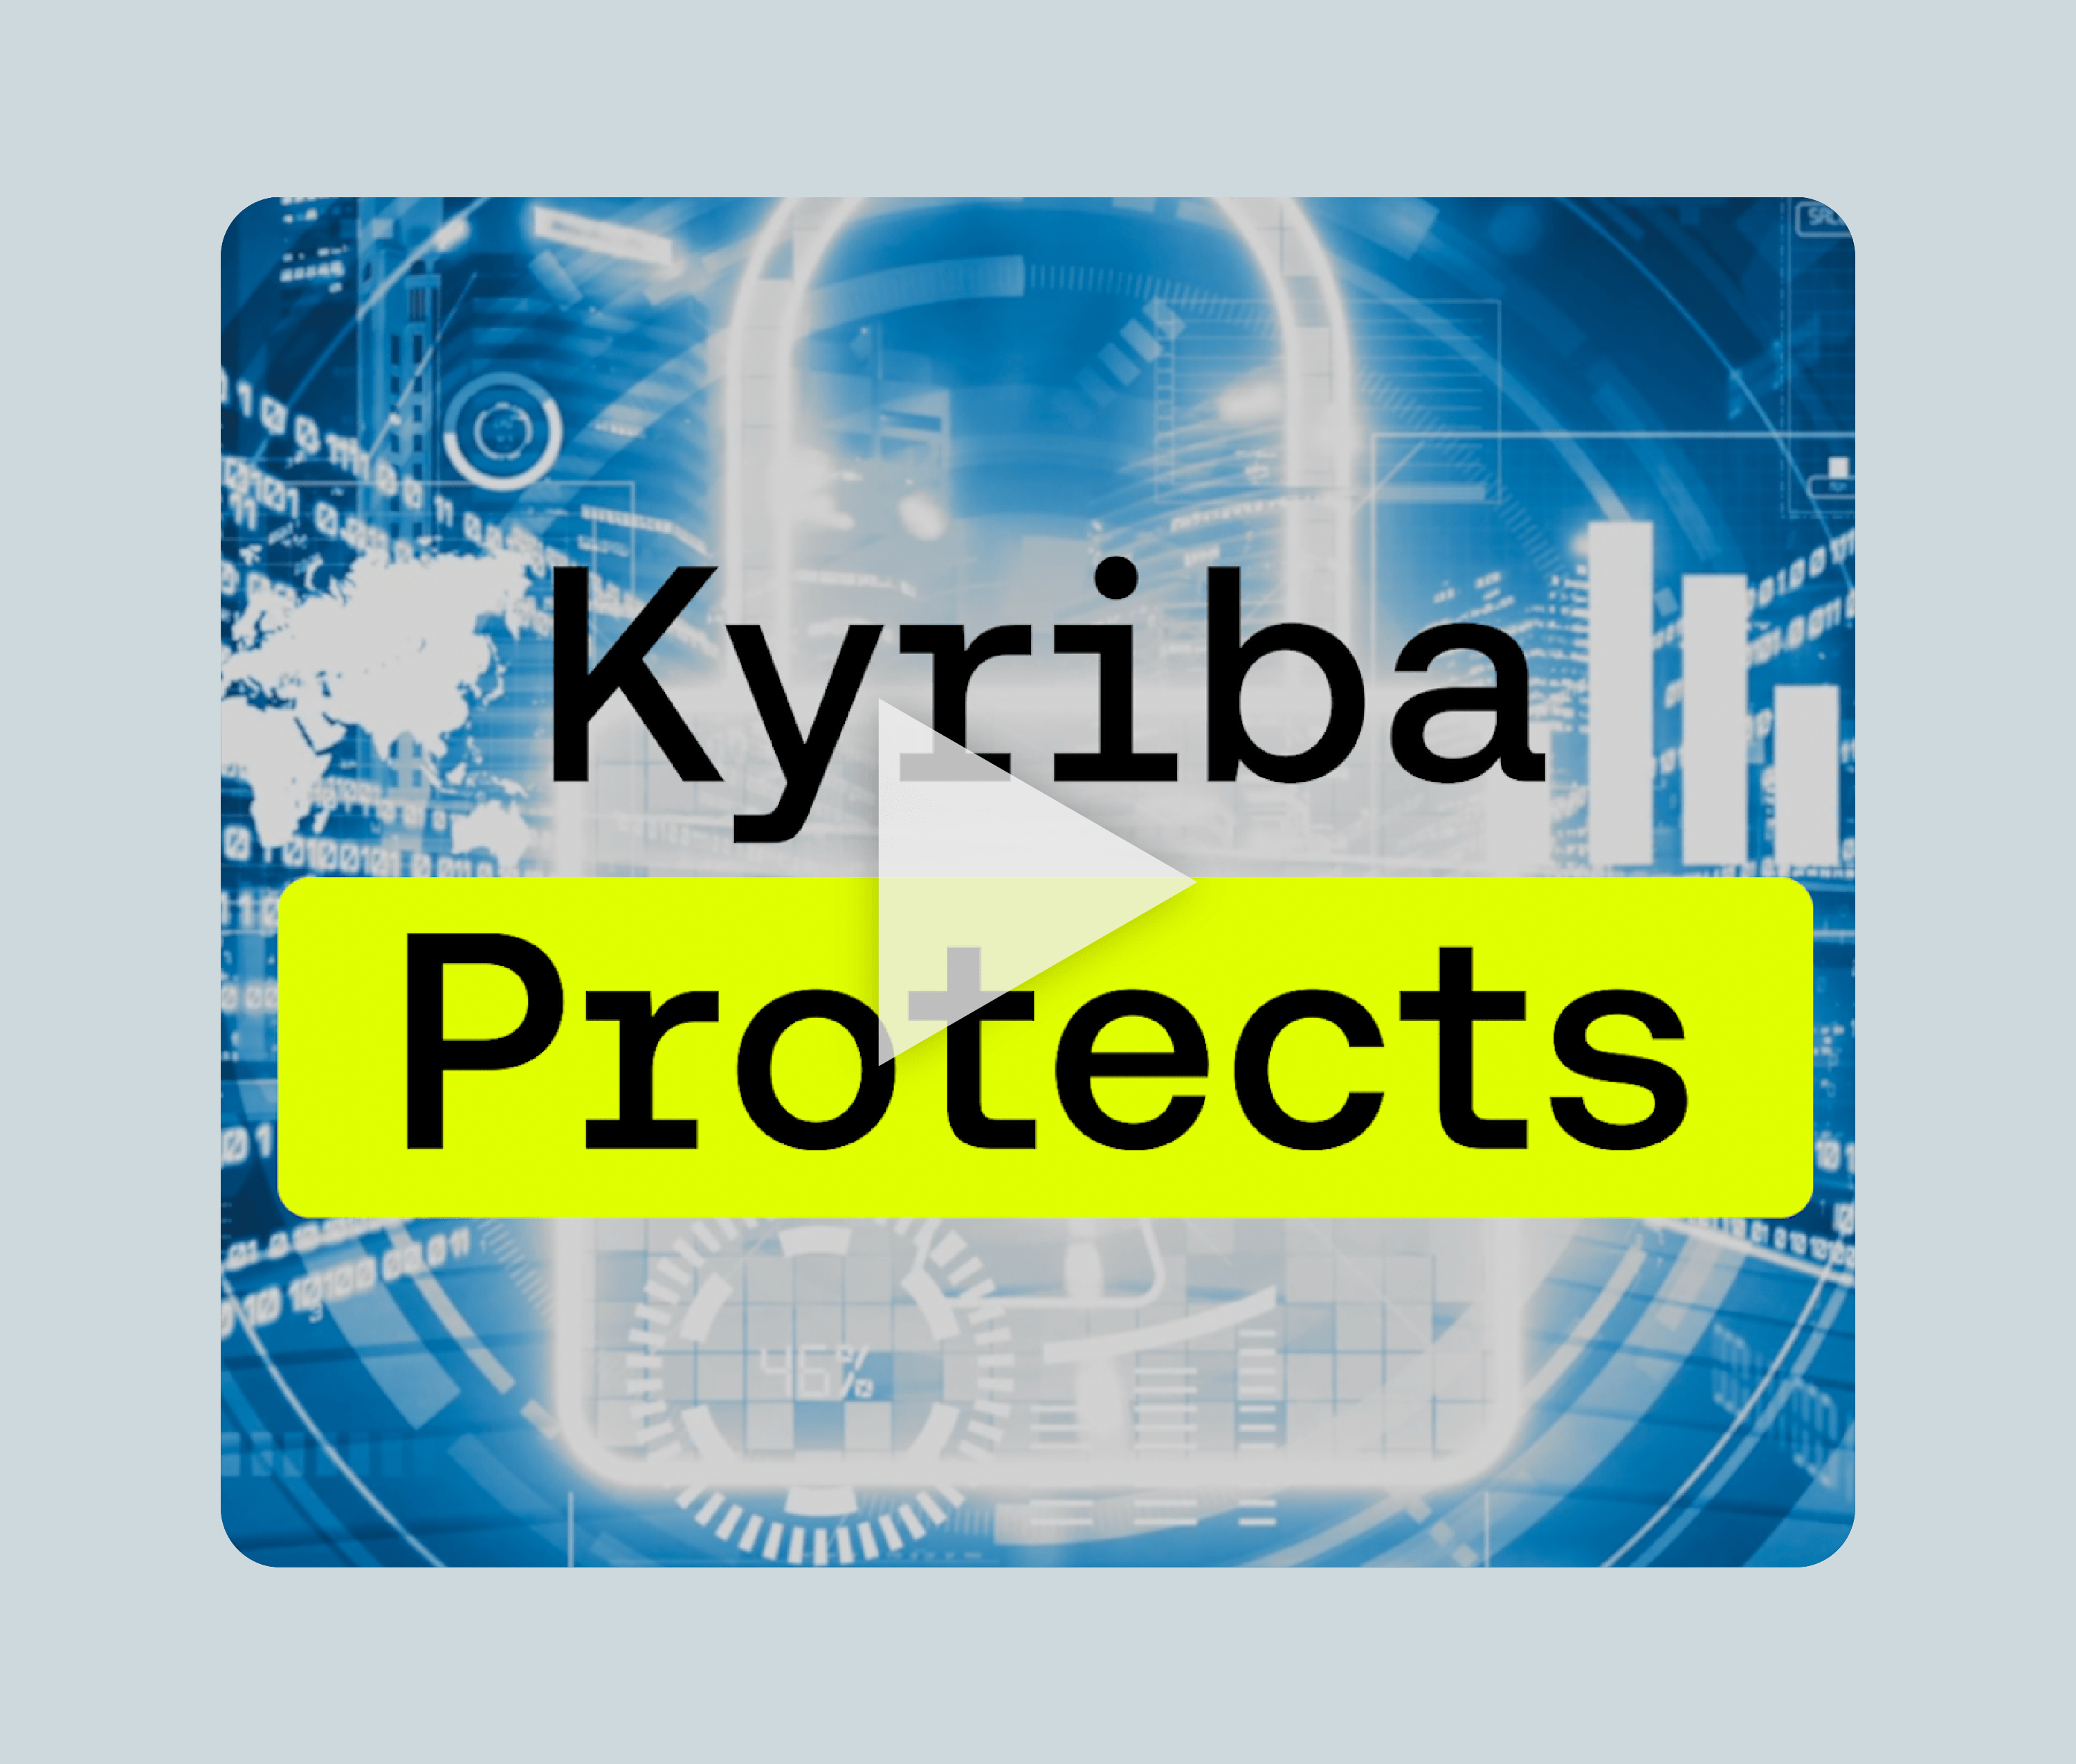 Kyriba Protects